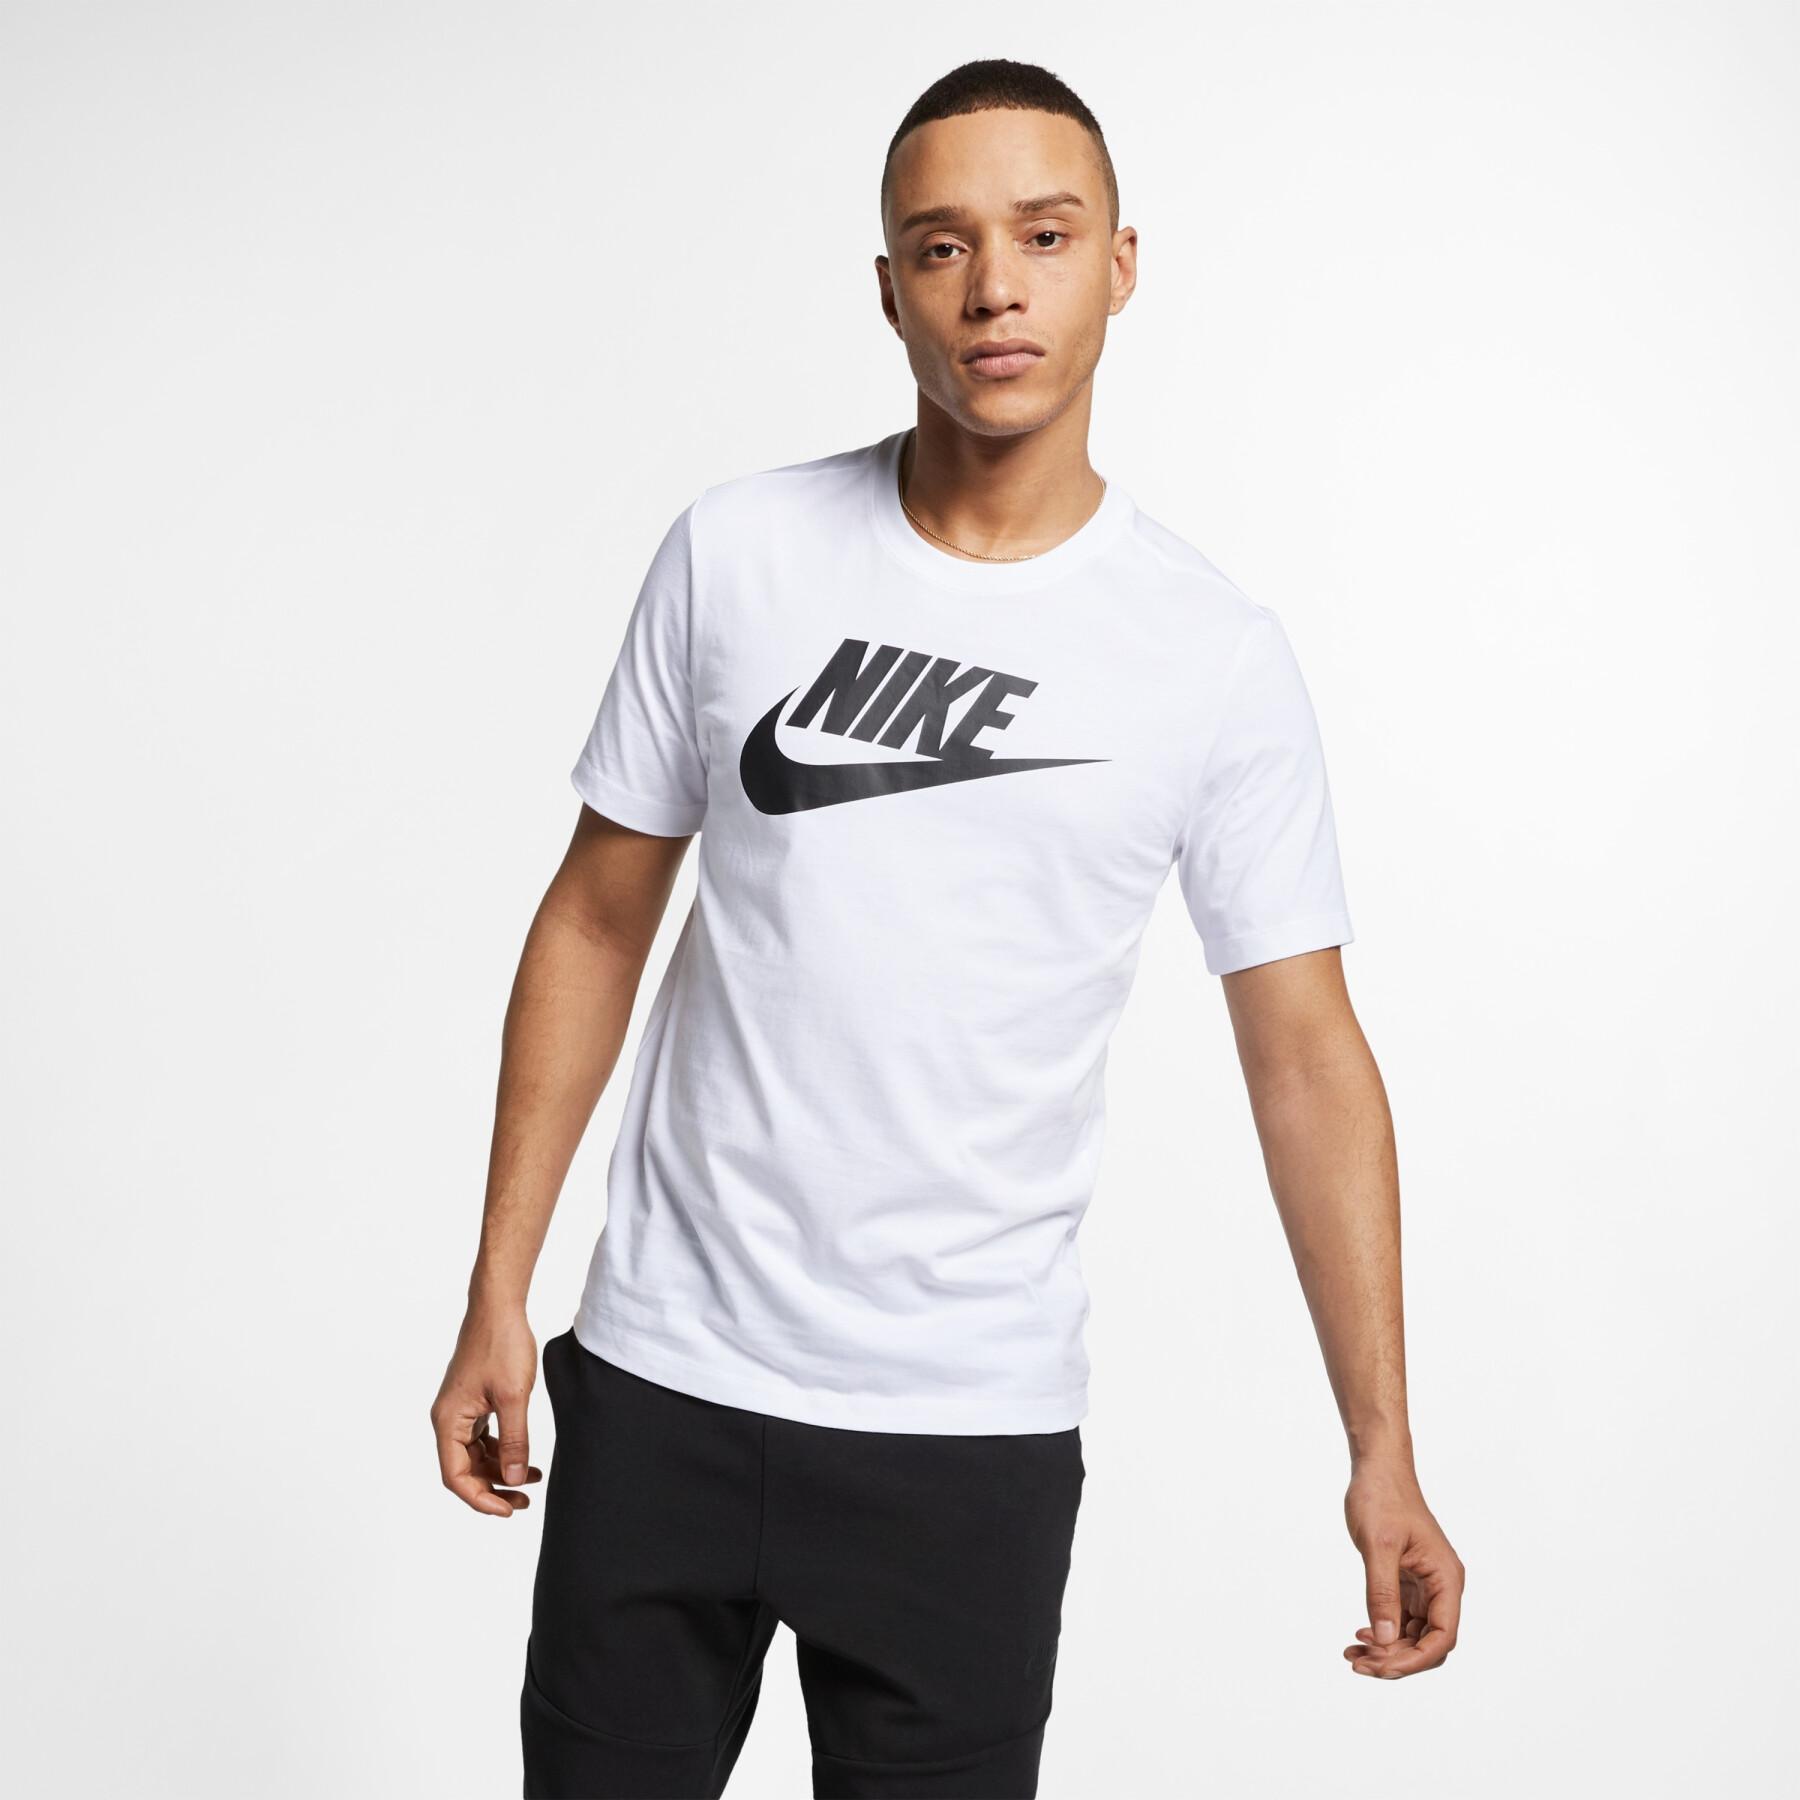 Maglietta Nike sportswear